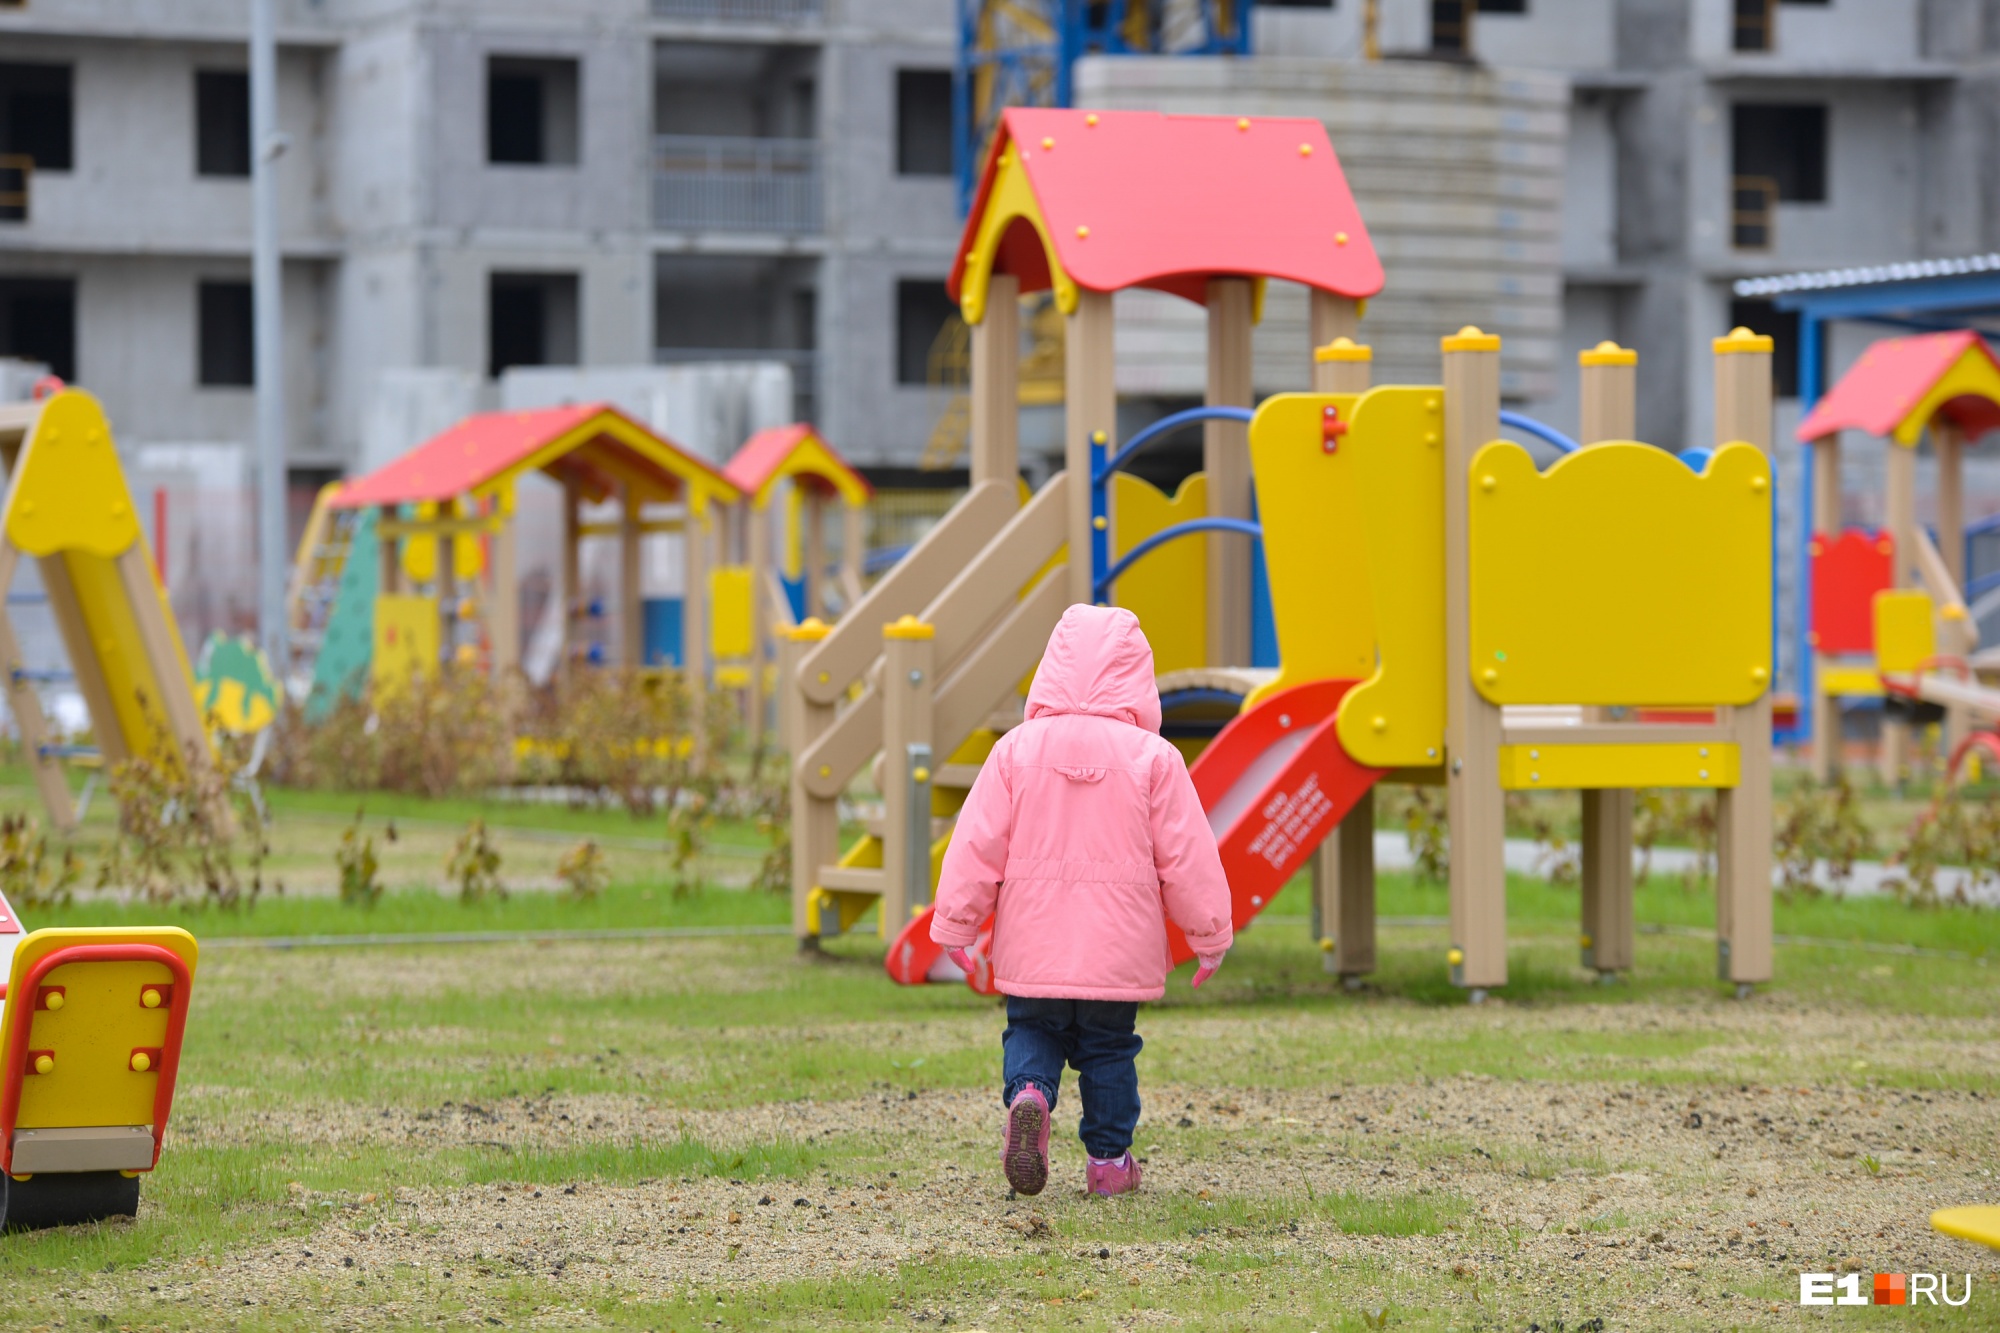 В детских садах Екатеринбурга с 4 по 7 мая будут открыты дежурные группы